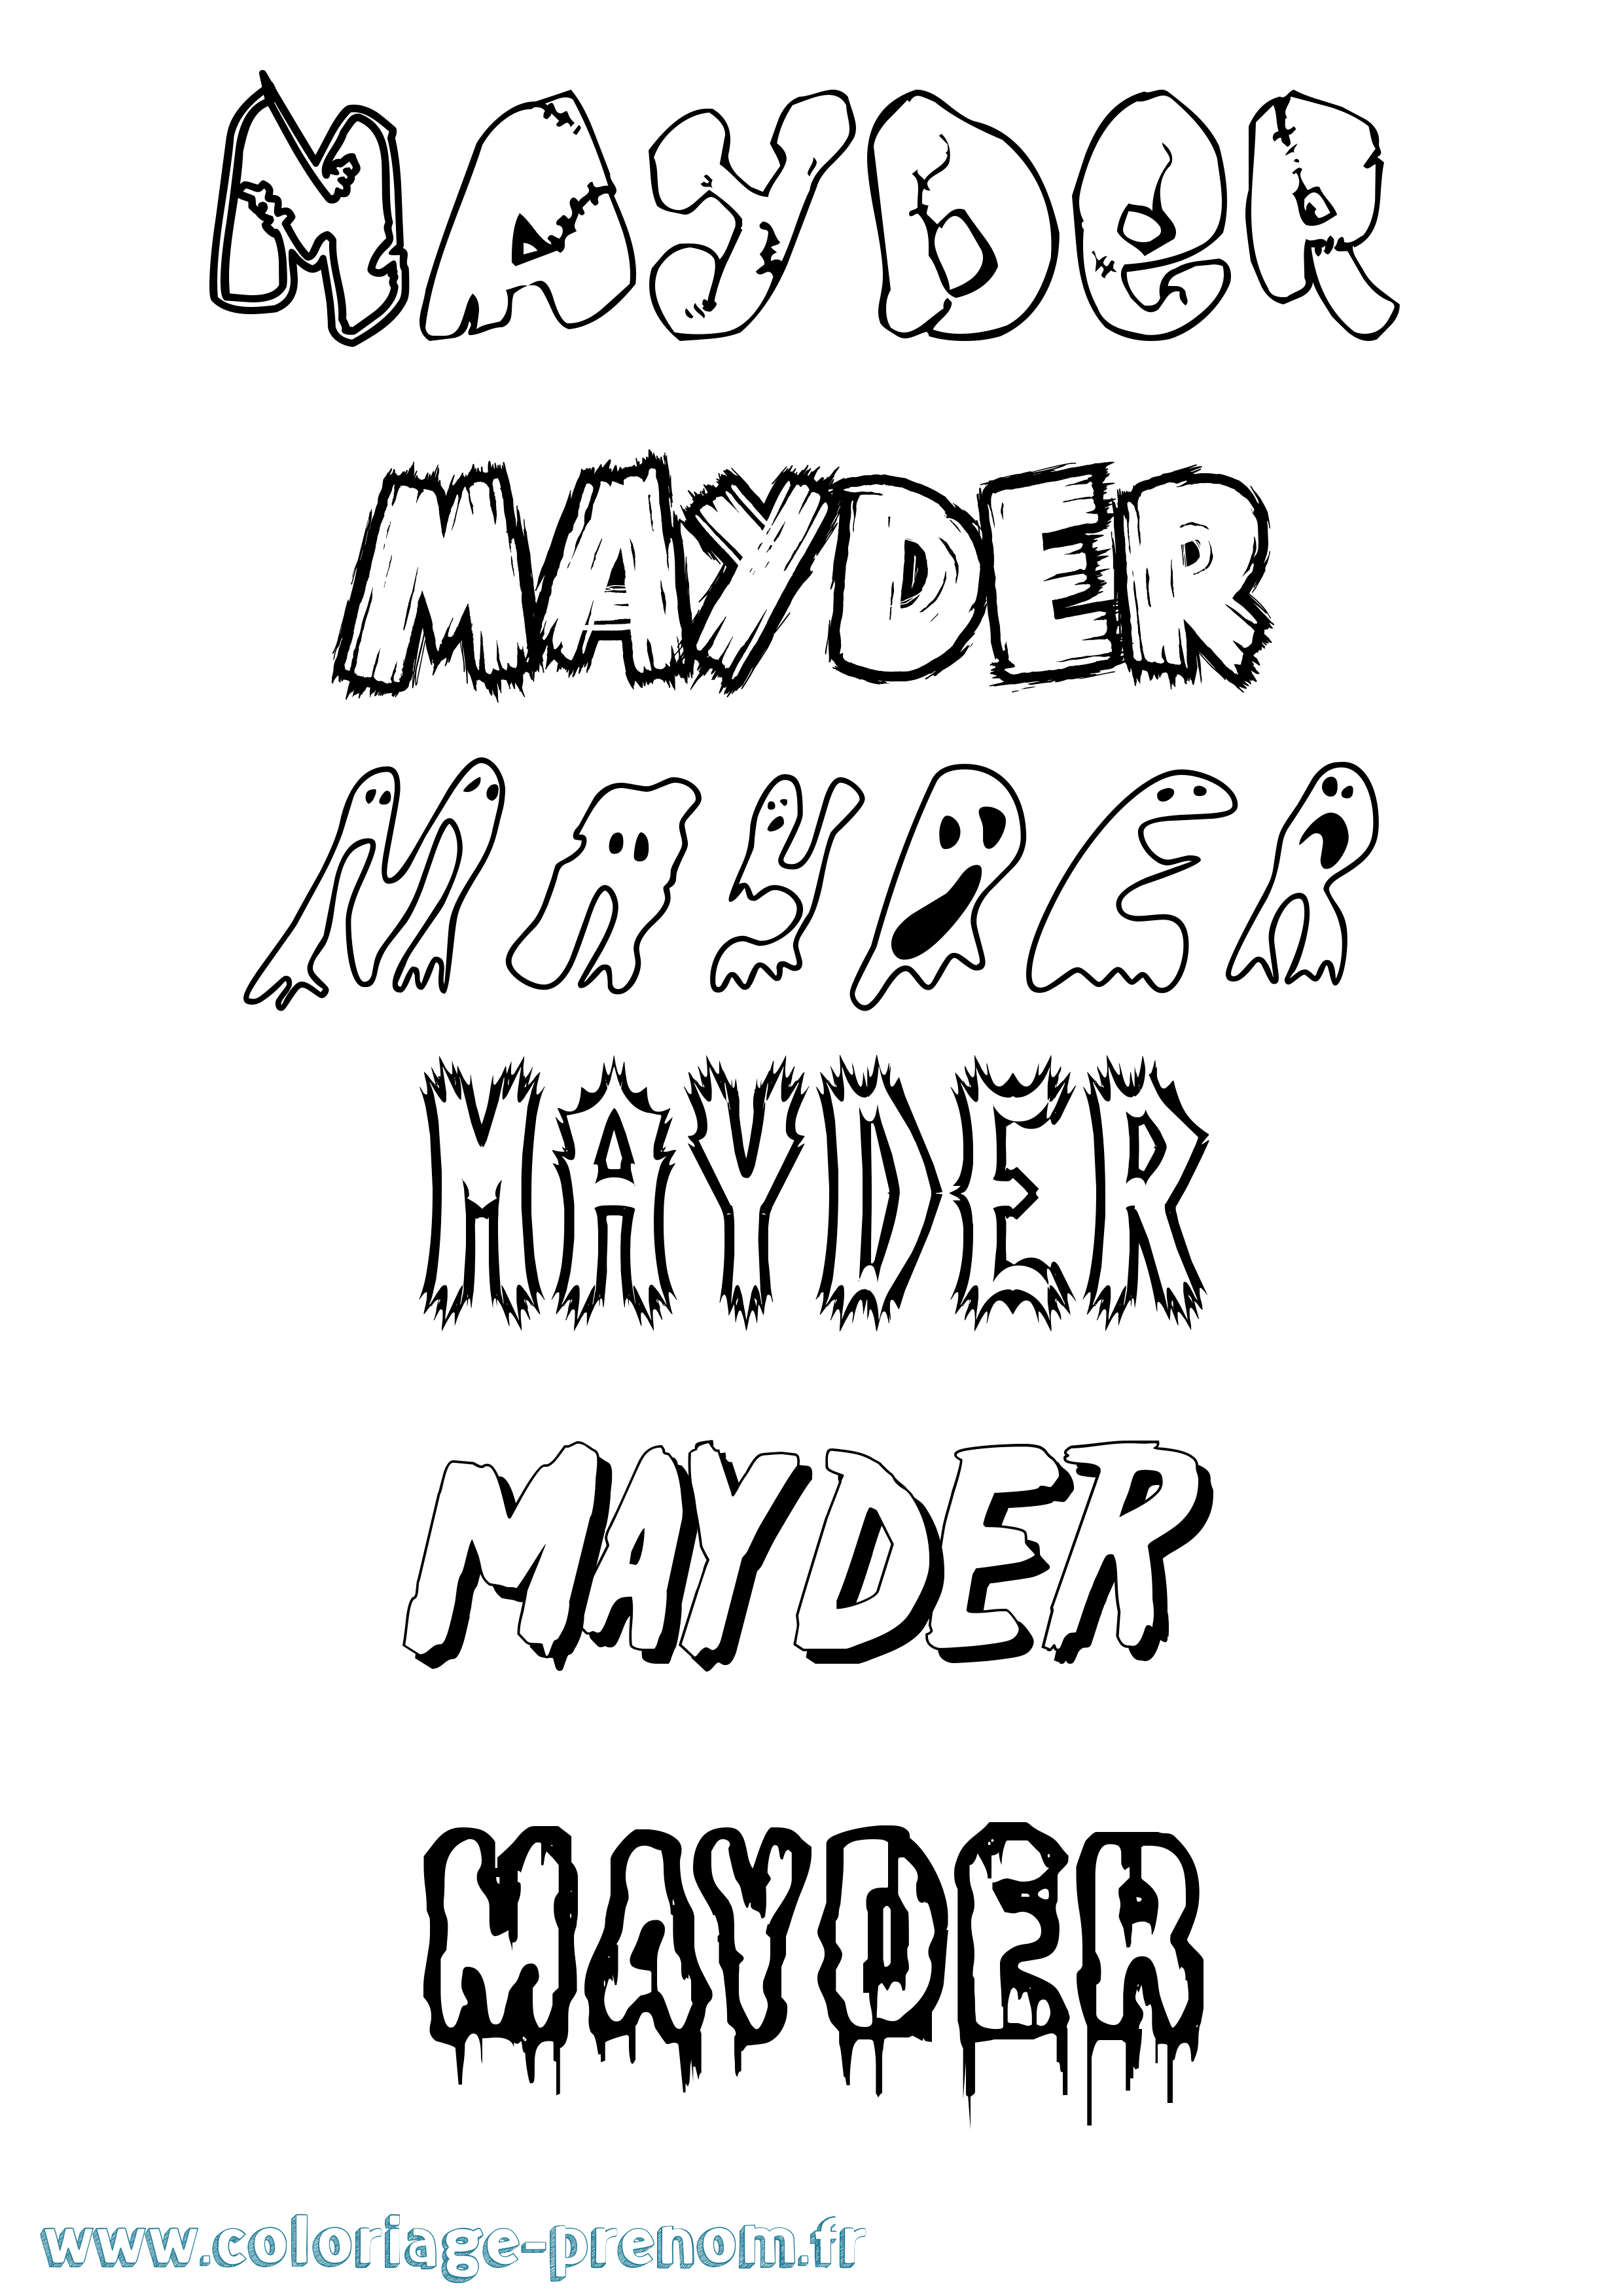 Coloriage prénom Mayder Frisson